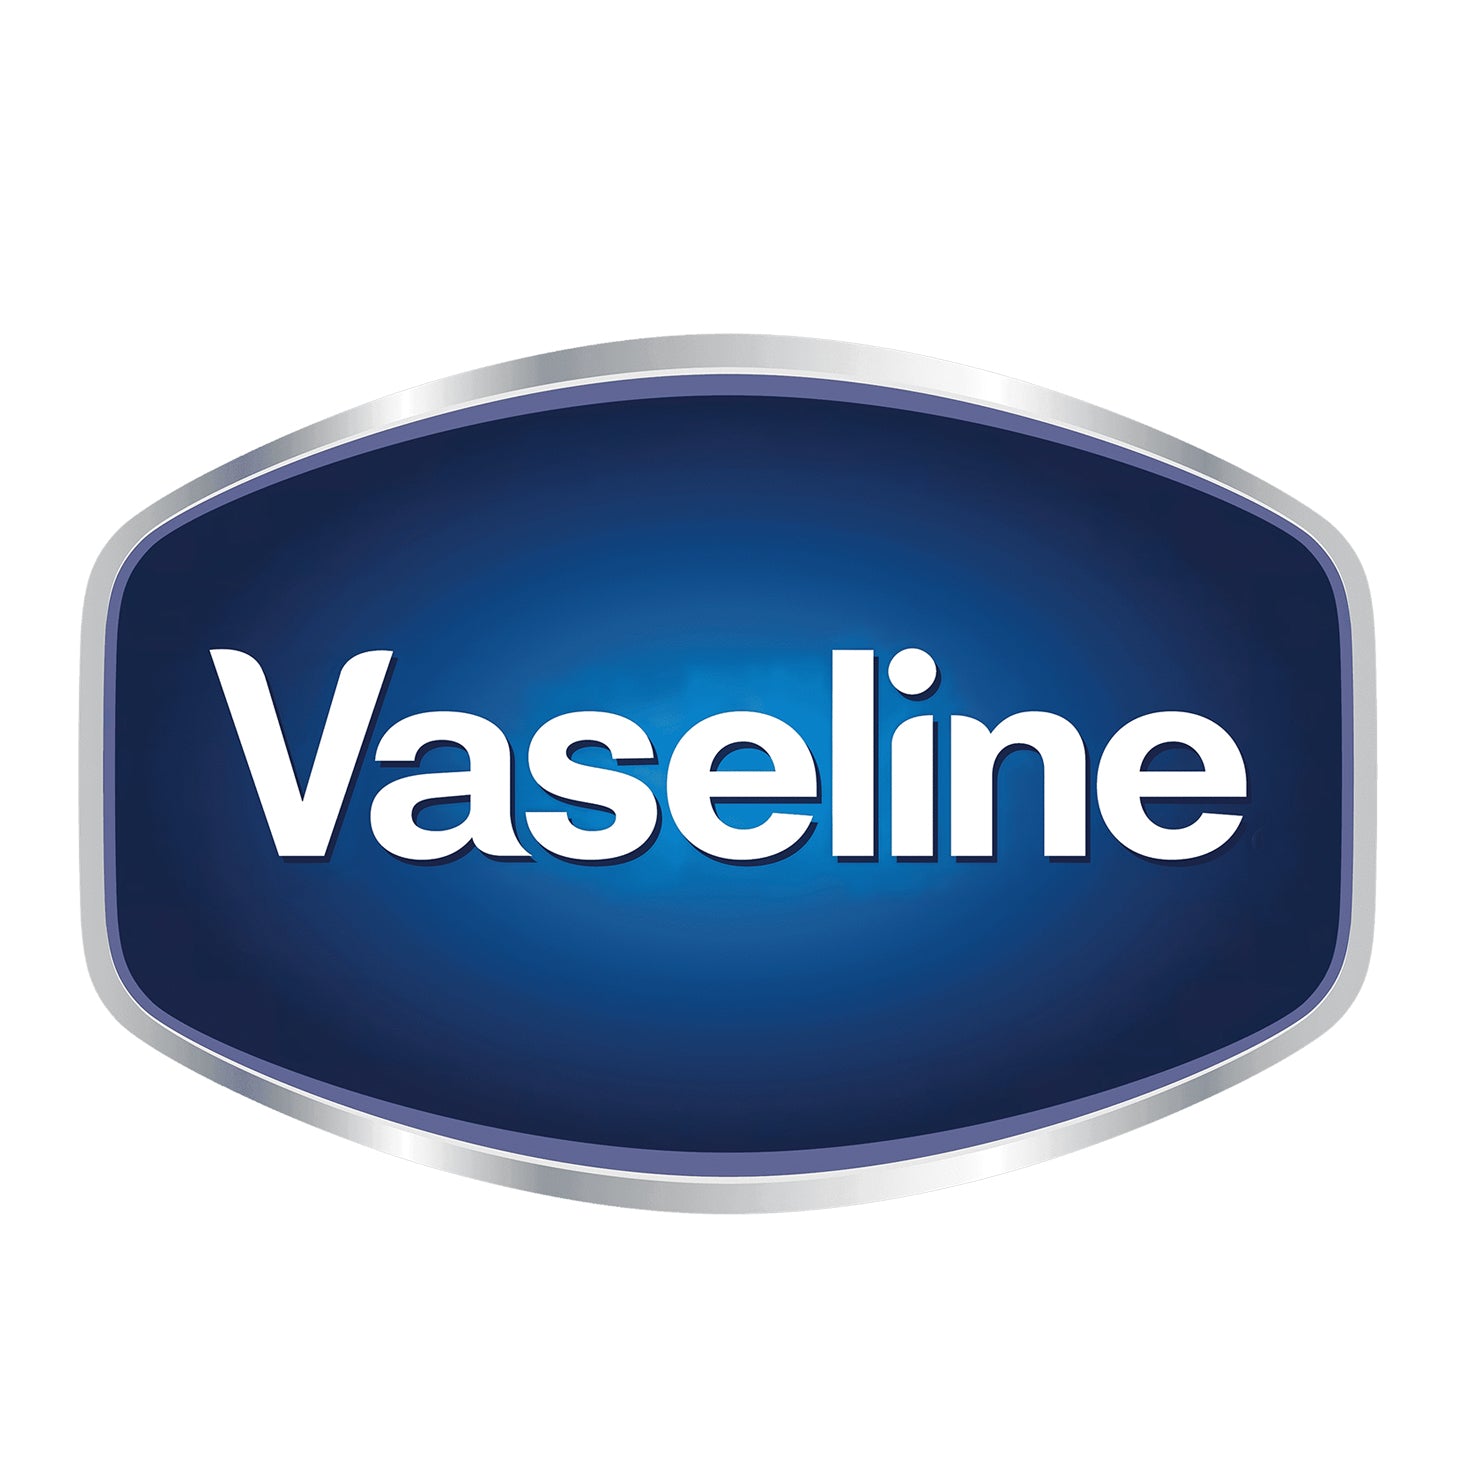 Lazybuy-brand-product-vaseline-logo-care